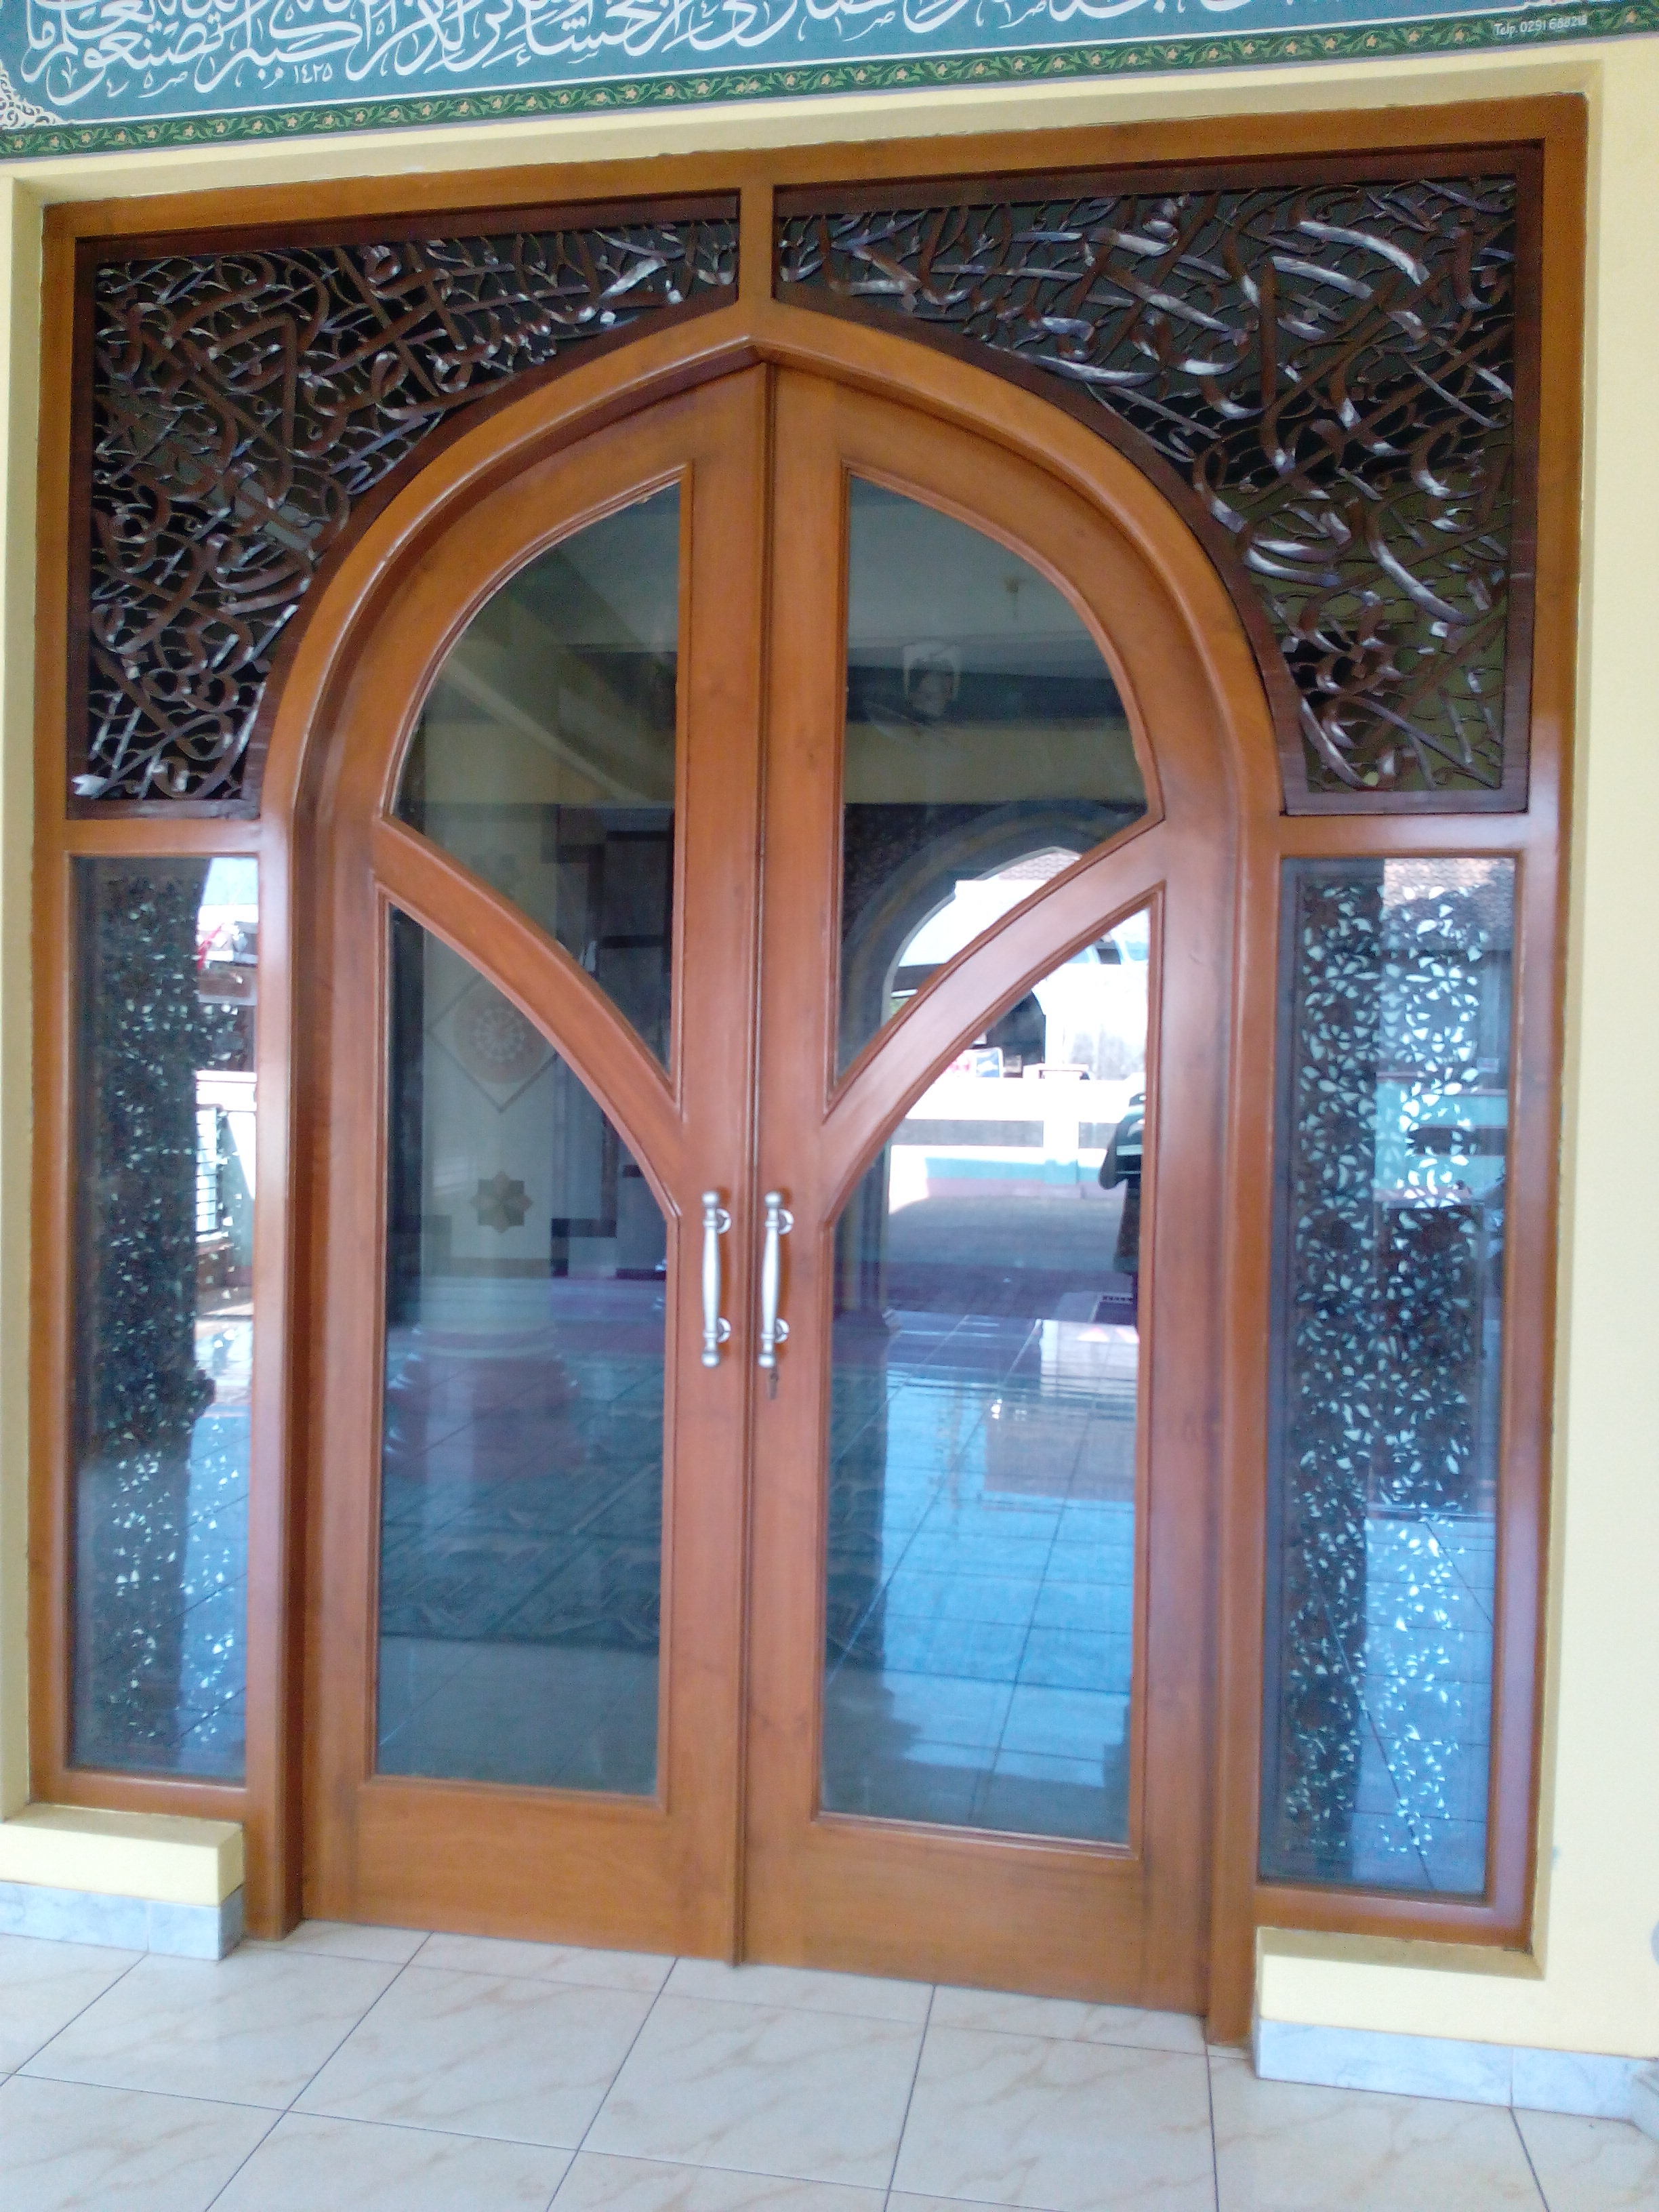 Desain Jendela Masjid Minimalis Rumah Joglo Limasan Work